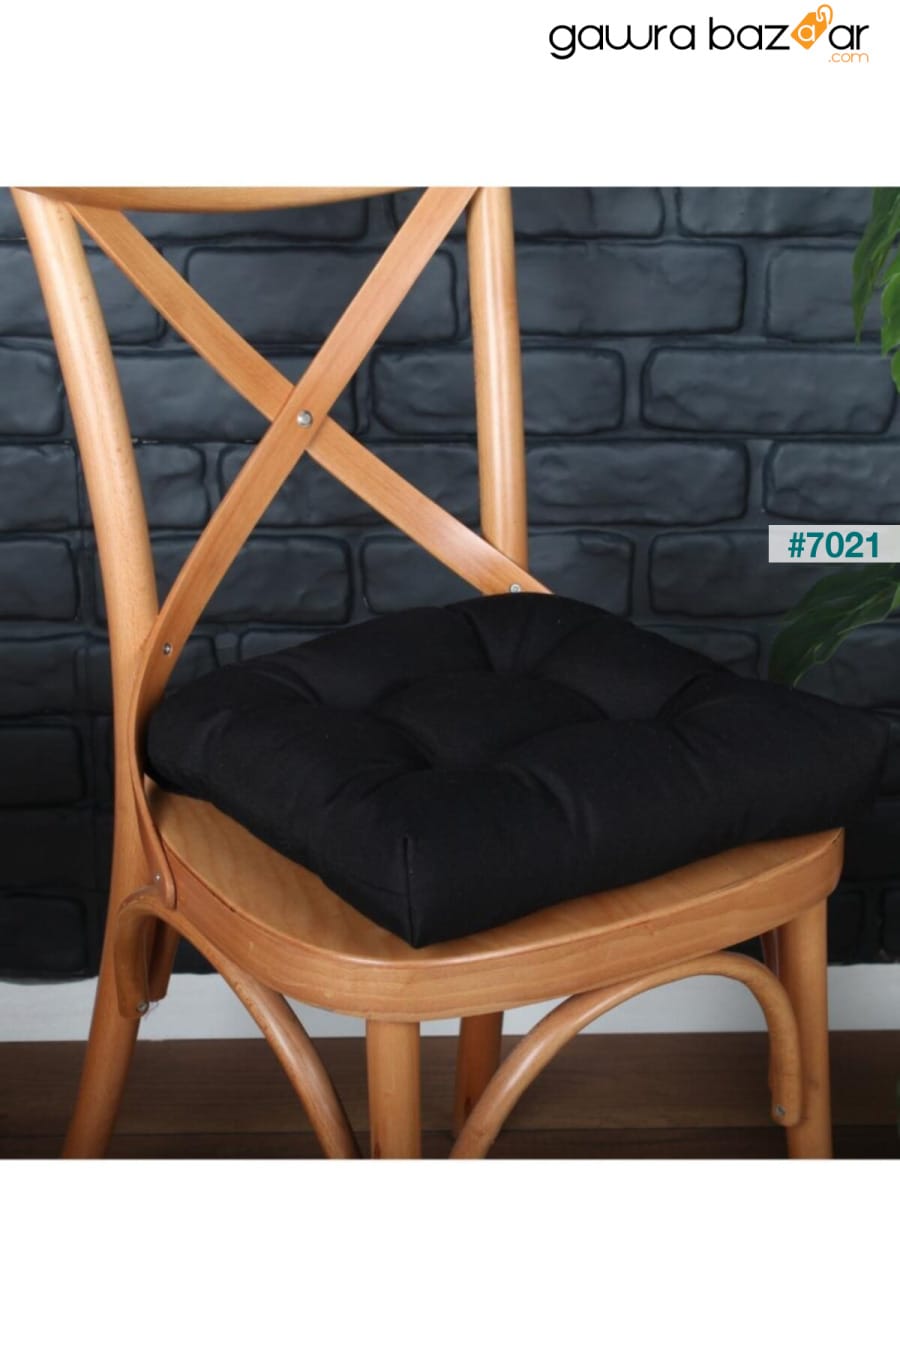 وسادة كرسي Pofidik الذهبية باللون الأسود ، مخيط خاص 40x40 سم ALTINPAMUK 1